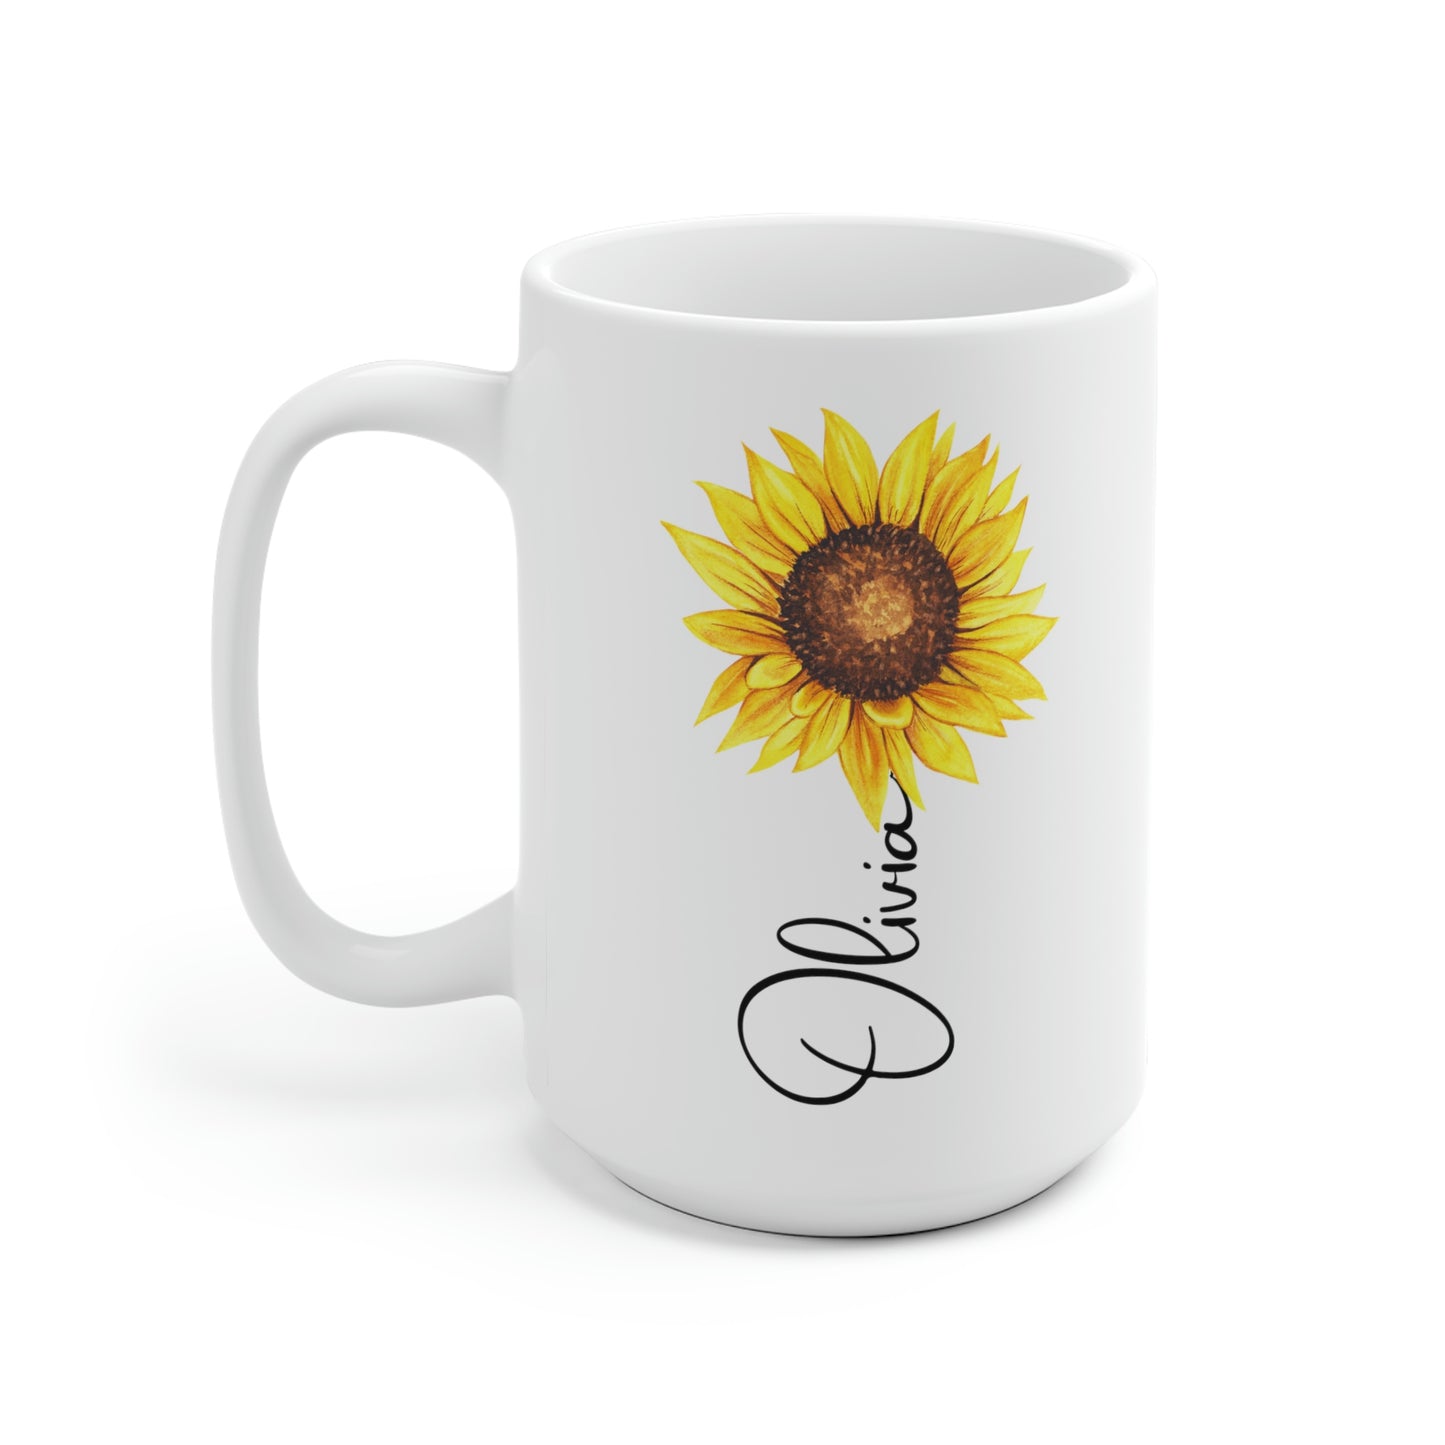 Personalized Sunflower Name Mug